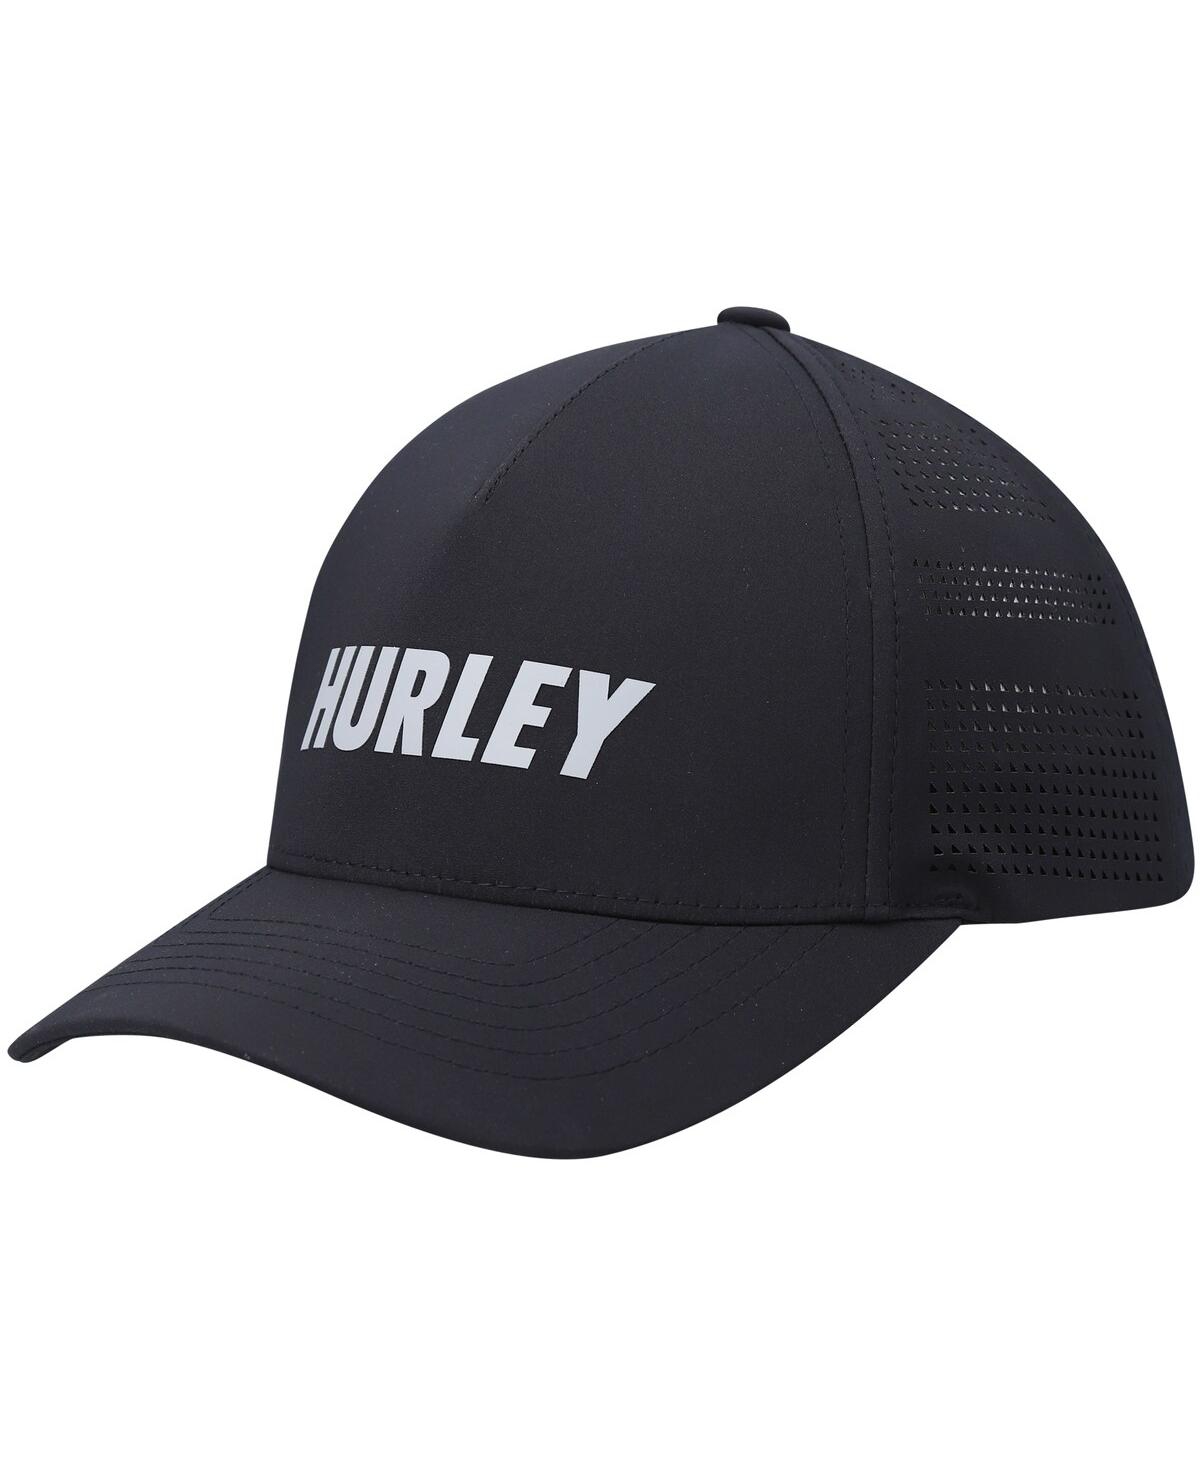 Men's Hurley Black Canyon Adjustable Hat - Black